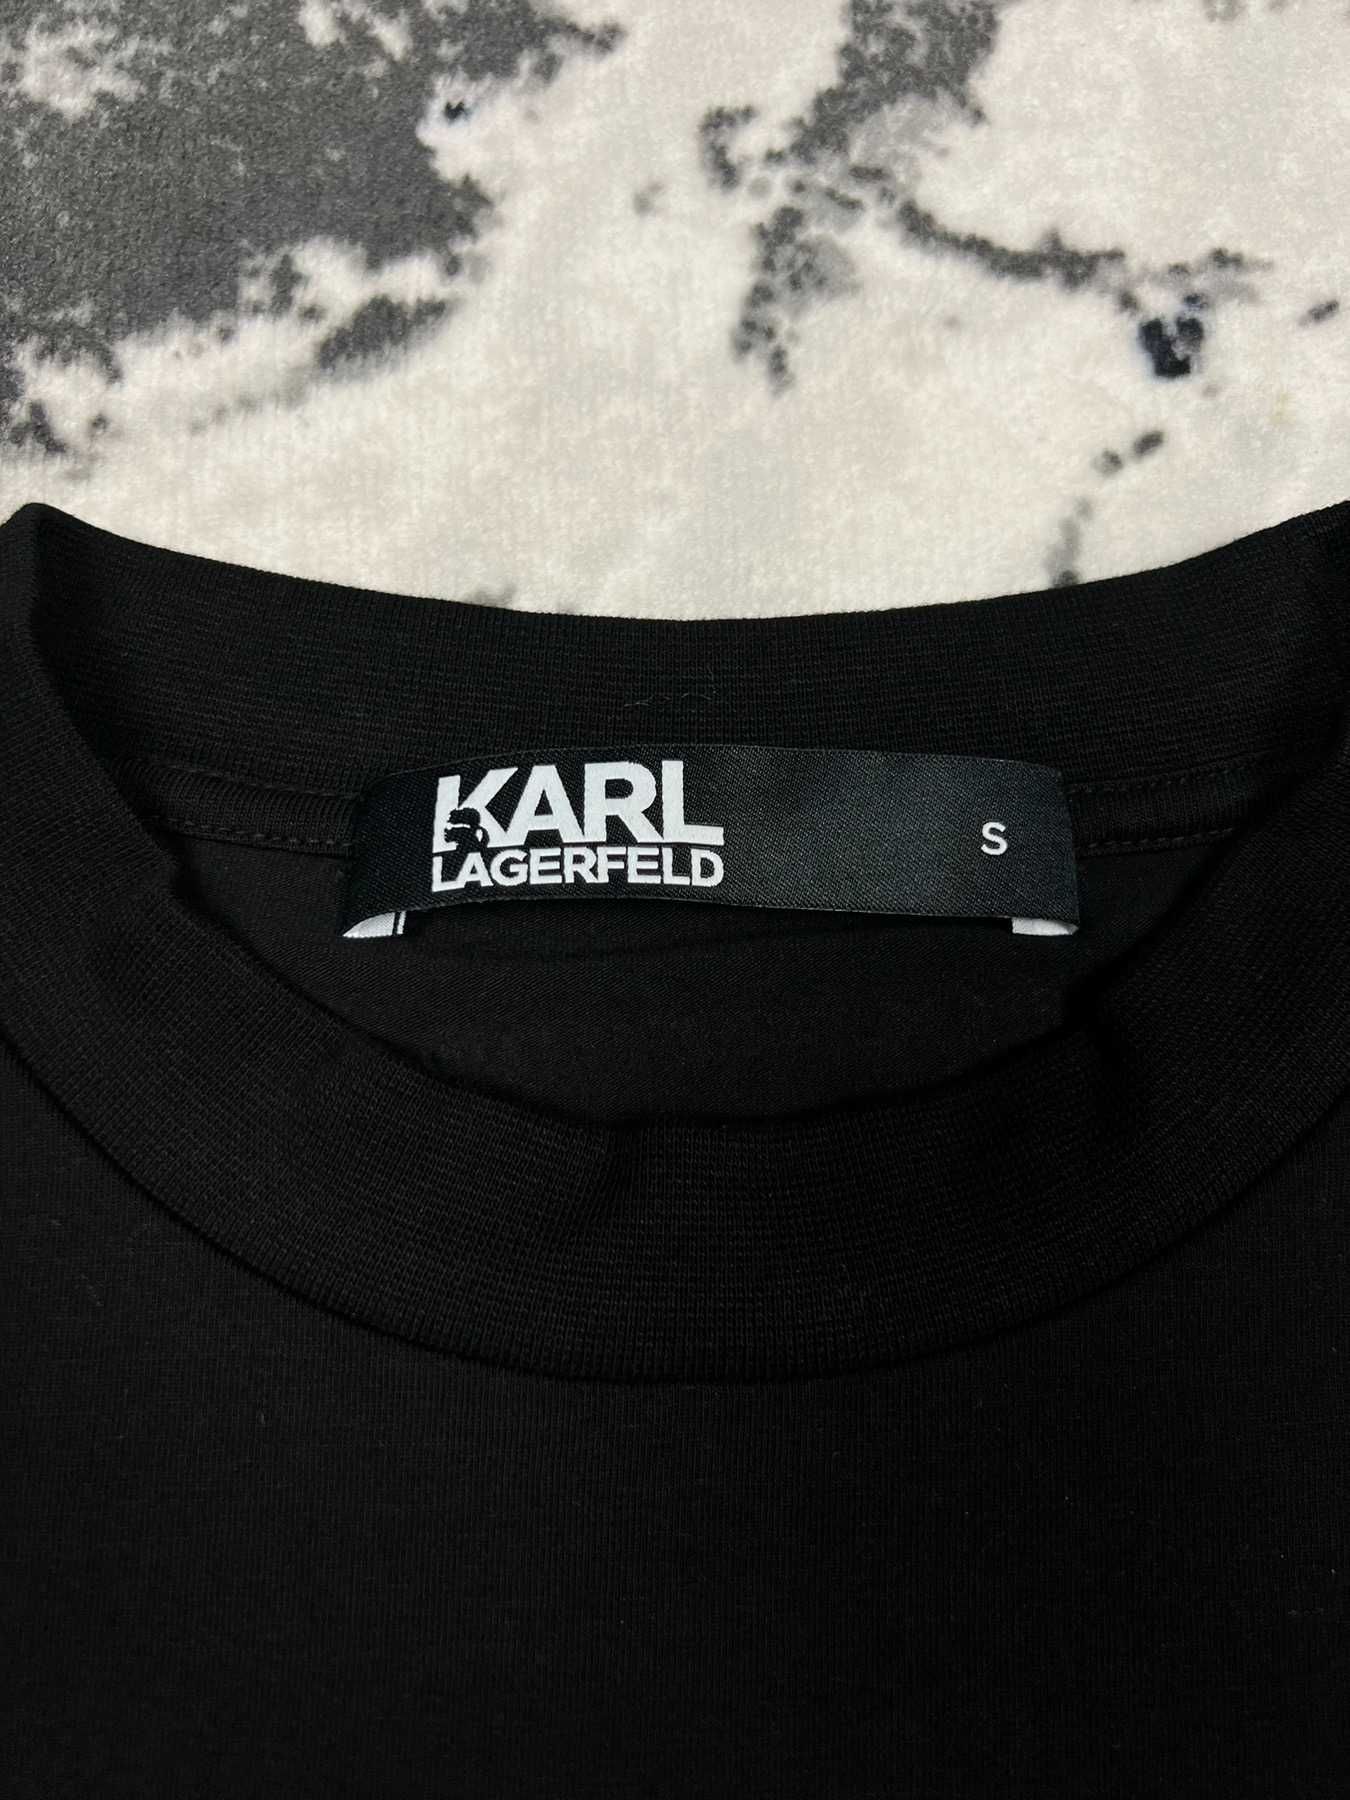 -70% Karl Lagerfeld черна тениска с щампа на златни нишки S M L